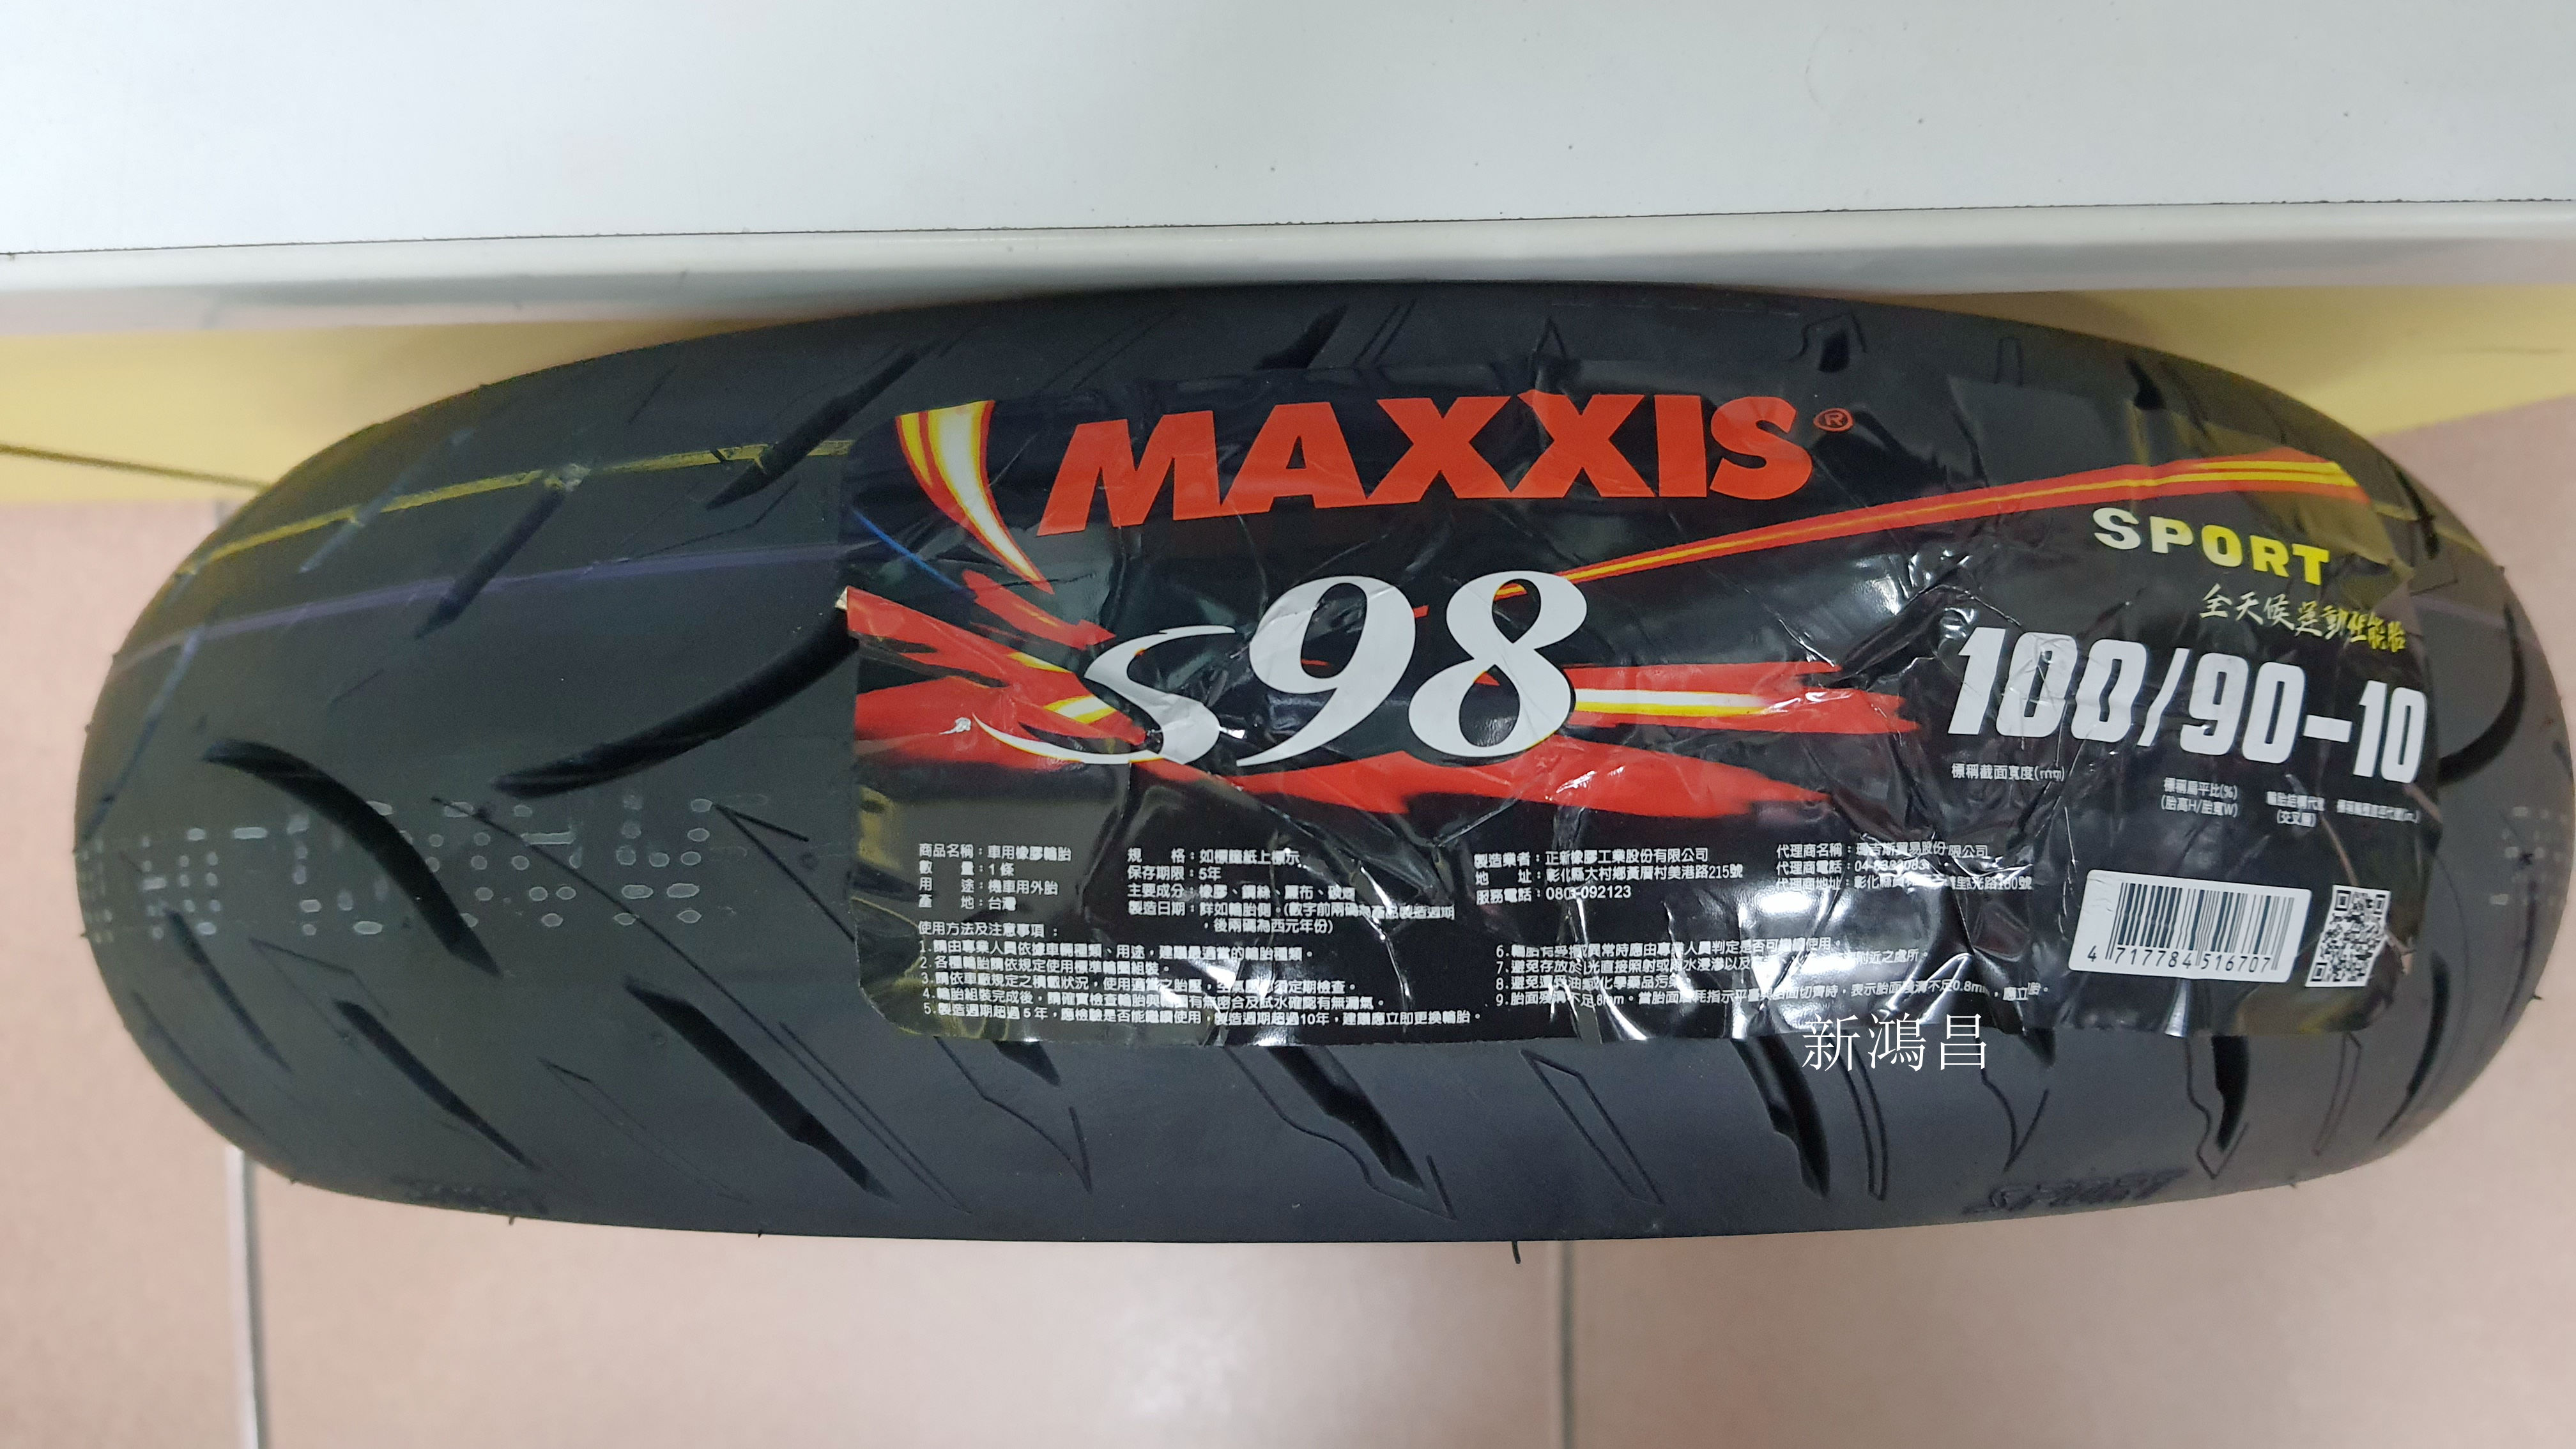 【新鴻昌】MAXXIS瑪吉斯 S98 SPORT 100/90-10 機車輪胎 10吋胎